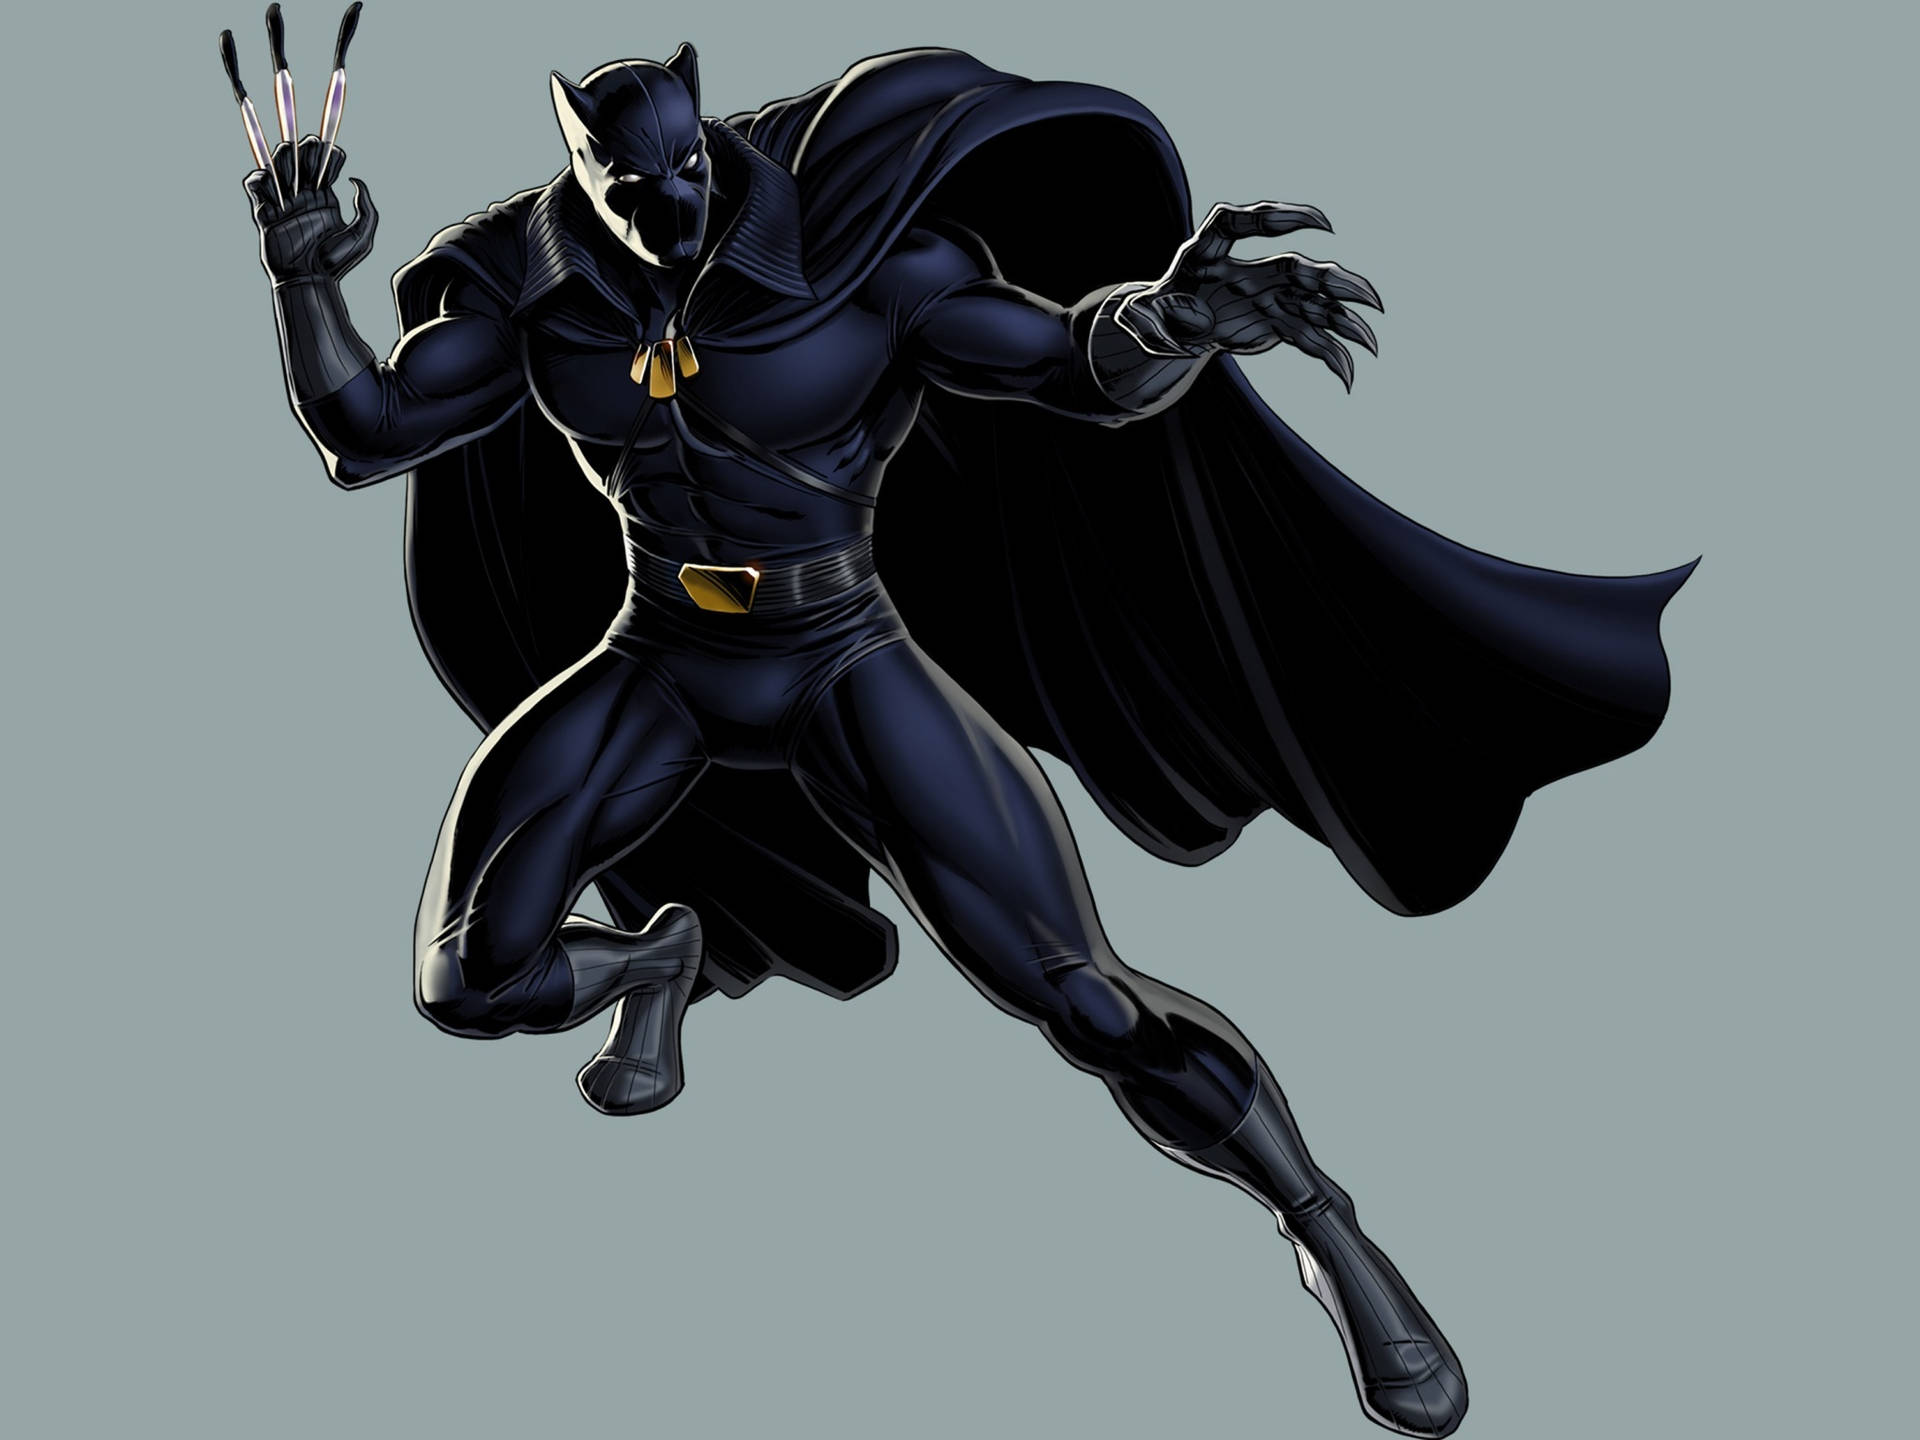 Black Panther Superhero Marvel Avengers Alliance Background